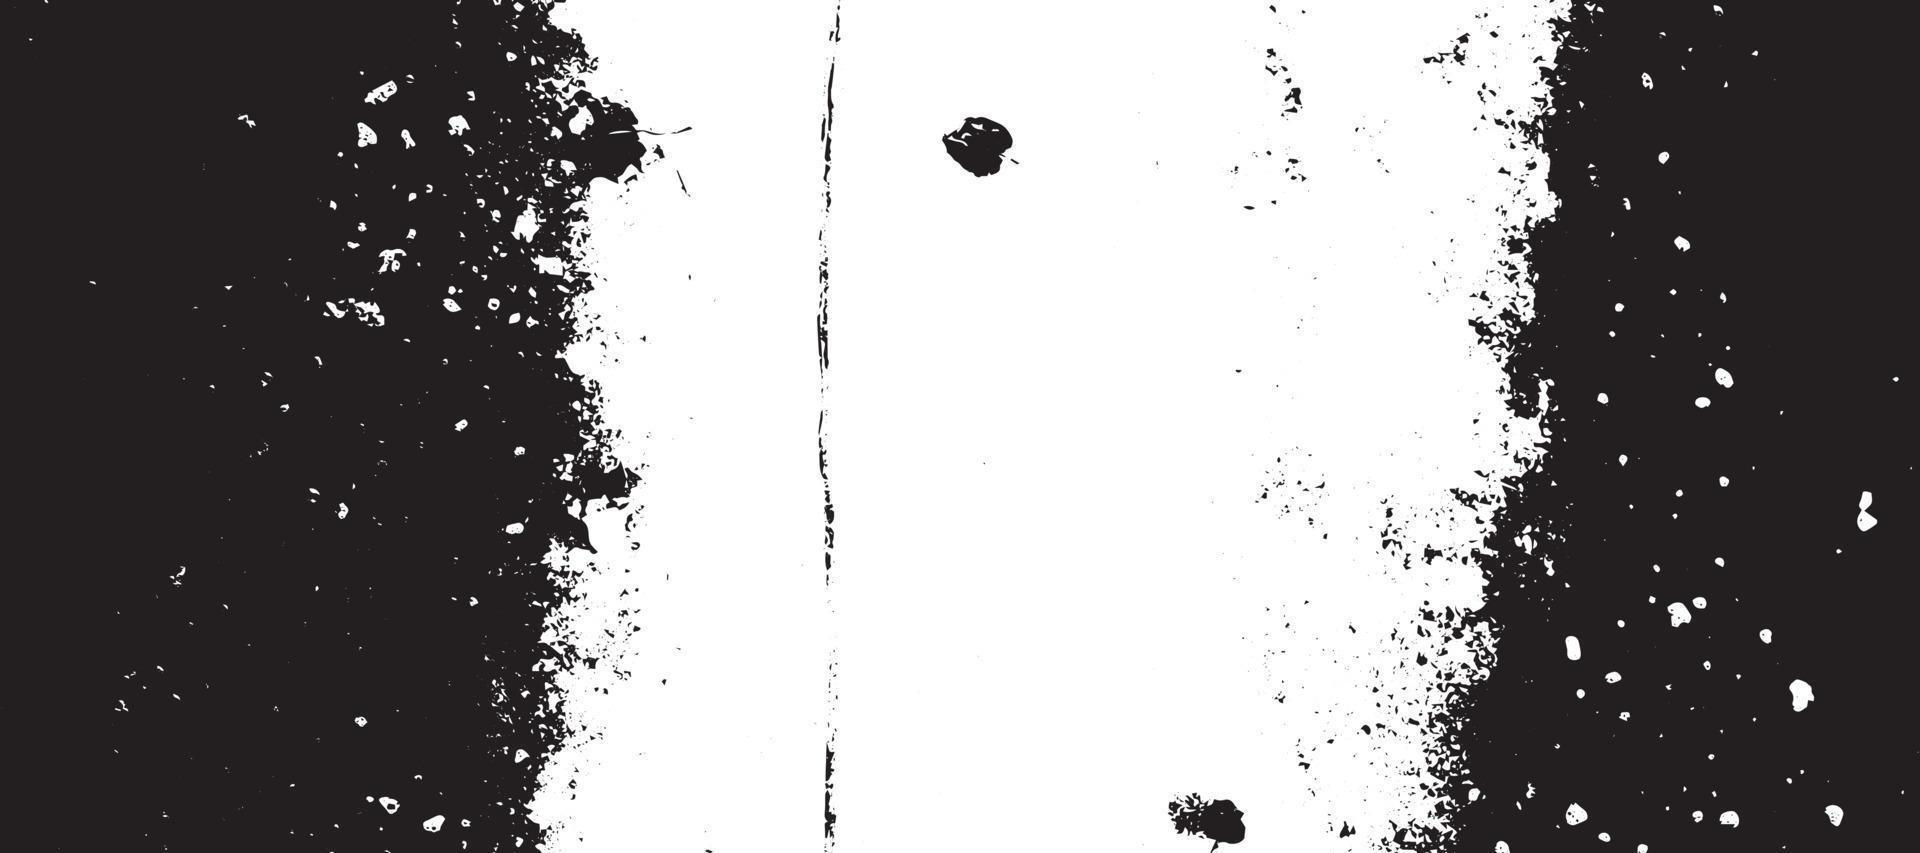 grunge textur effekt. bedrövad täcka över grov texturerat. abstrakt årgång svartvit. svart isolerat på vit bakgrund. grafisk design element halvton stil begrepp för baner, flygblad, affisch vektor